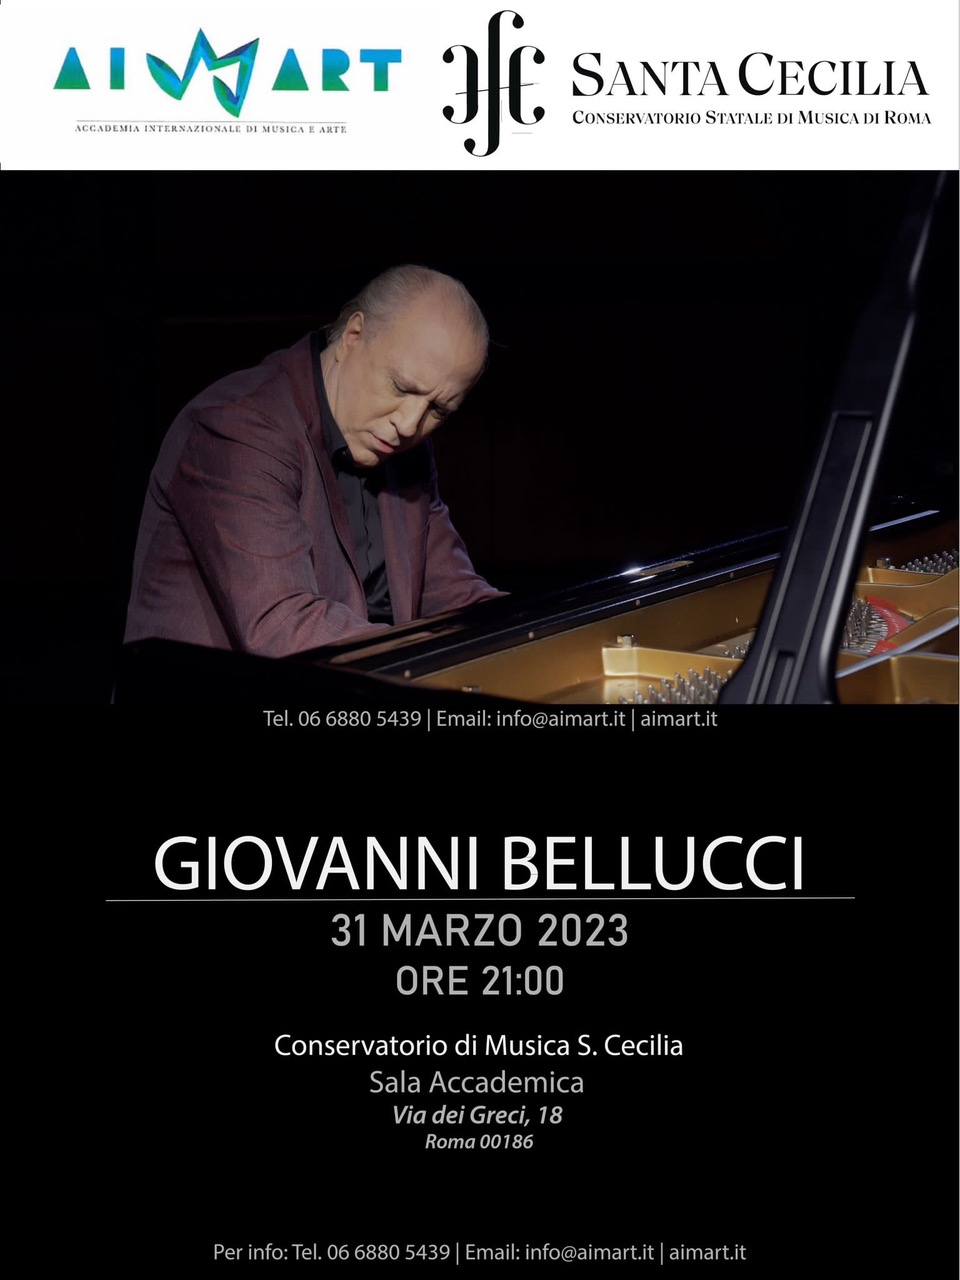 Roma, 31 marzo 2023, ore 21<br />
Sala Accademica del Conservatorio di S. Cecilia, via dei Greci 18</p>
<p>Il pianista Giovanni Bellucci in concerto: in viaggio con Franz Liszt